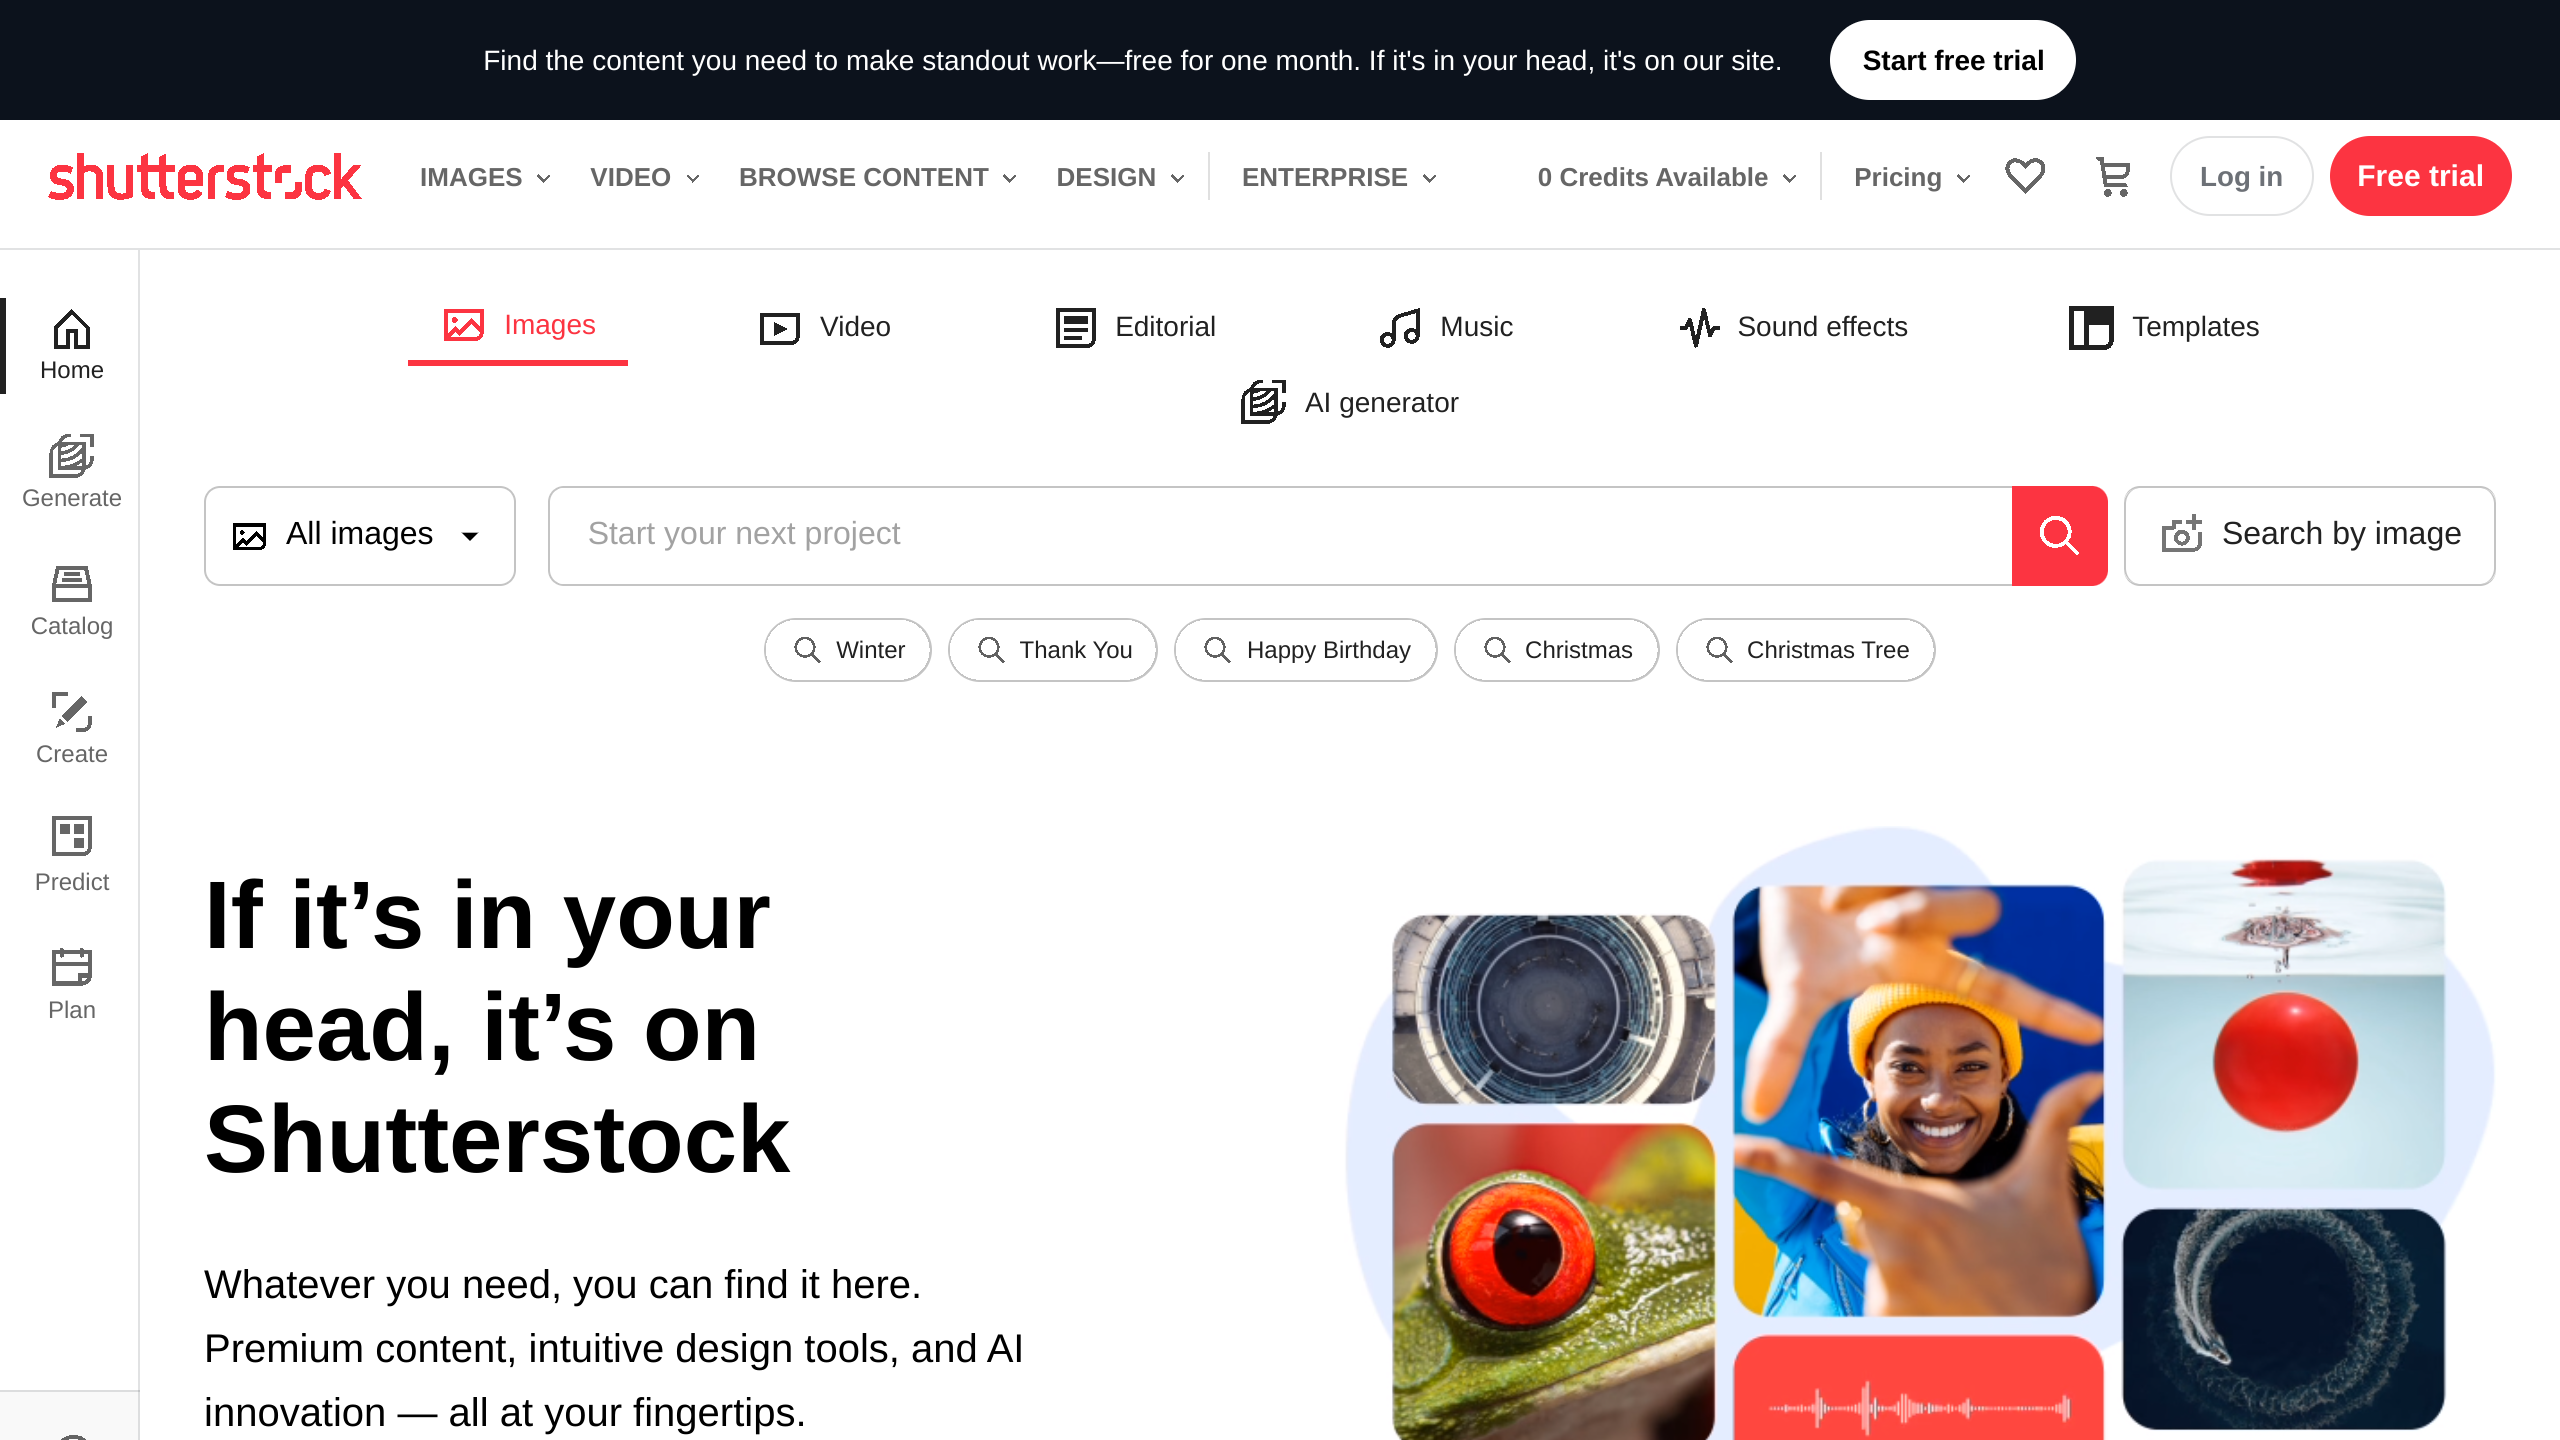 Shutterstock's website screenshot